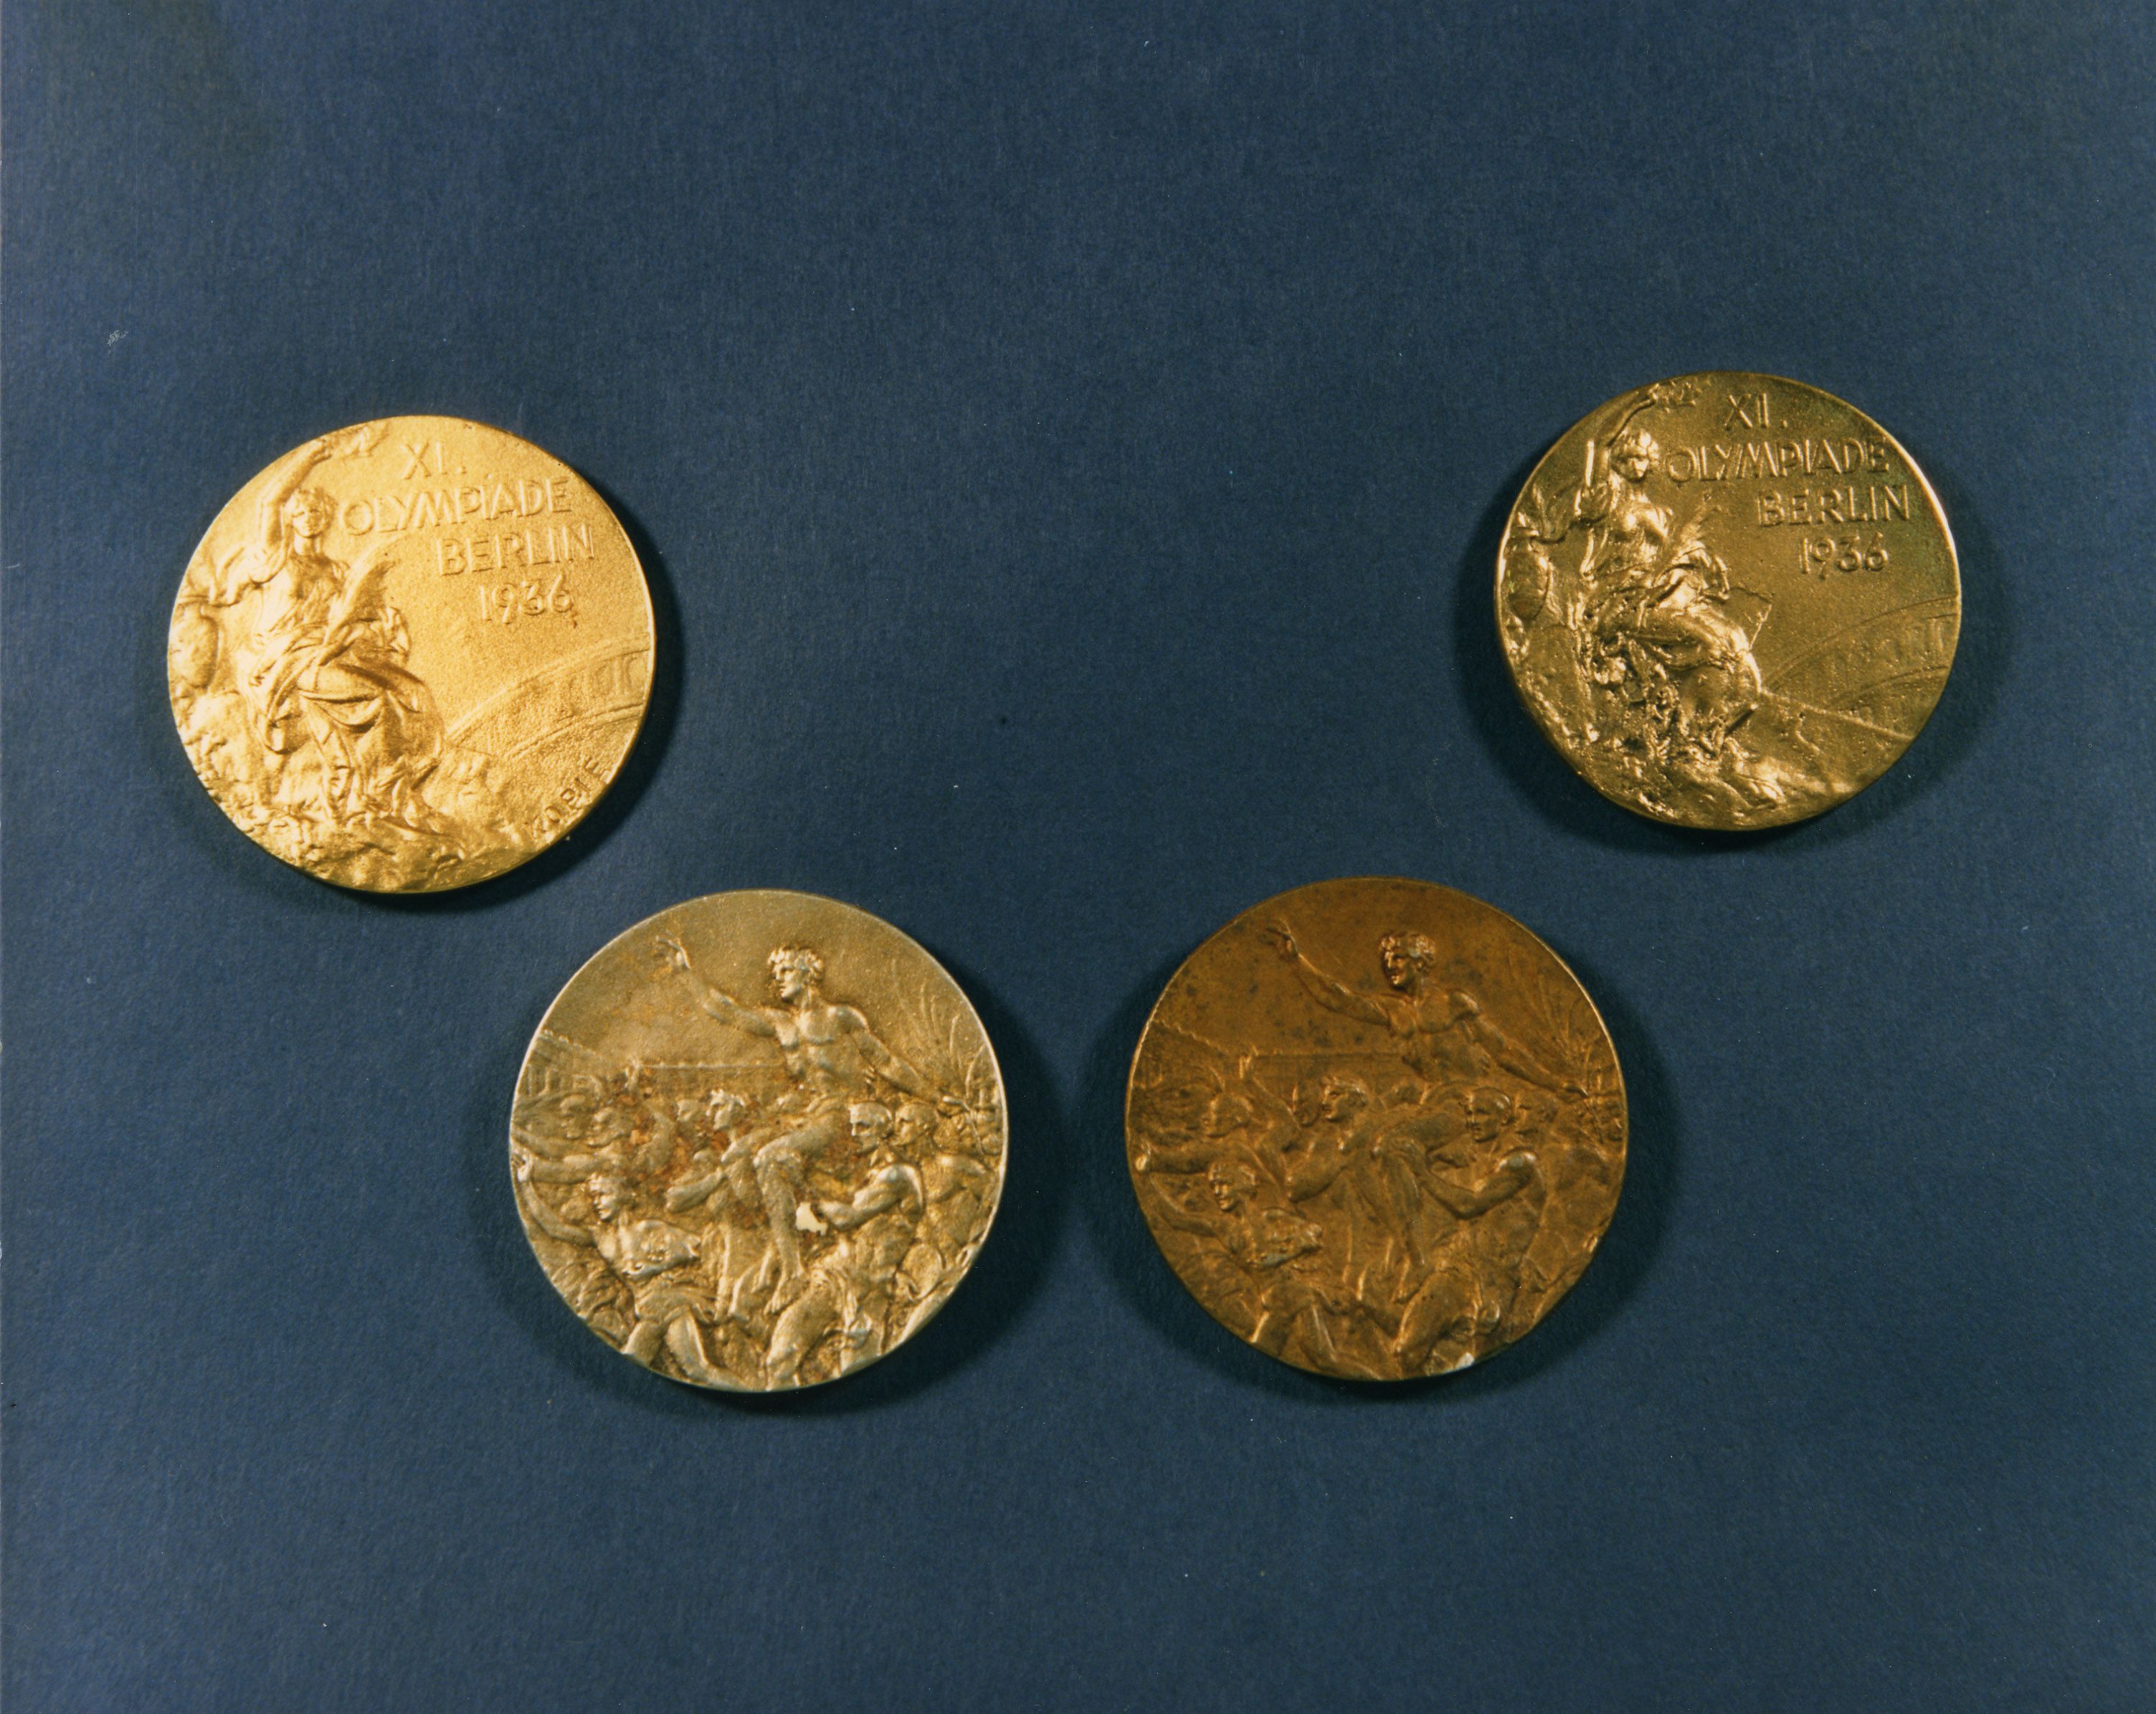 Золотую медаль Олимпиады 1936 года выставили на аукцион за рекордные 2 миллиона долларов.